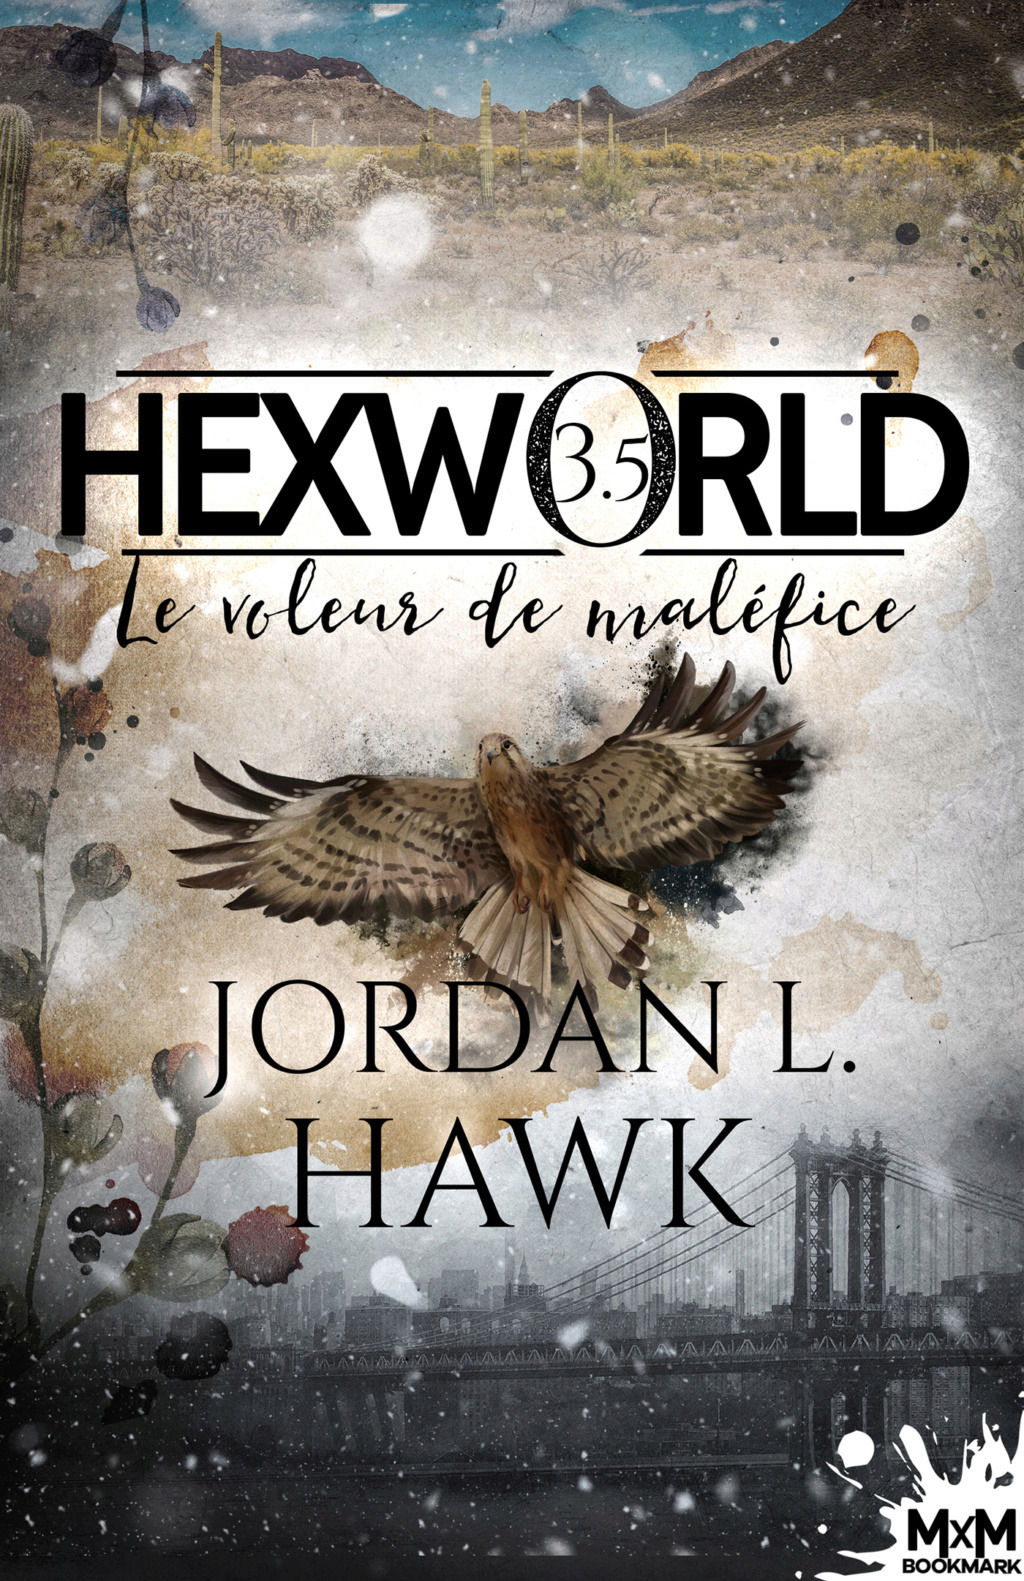 Hexworld - Tome 3,5 : Le voleur de maléfice de Jordan L. Hawk 40452e10